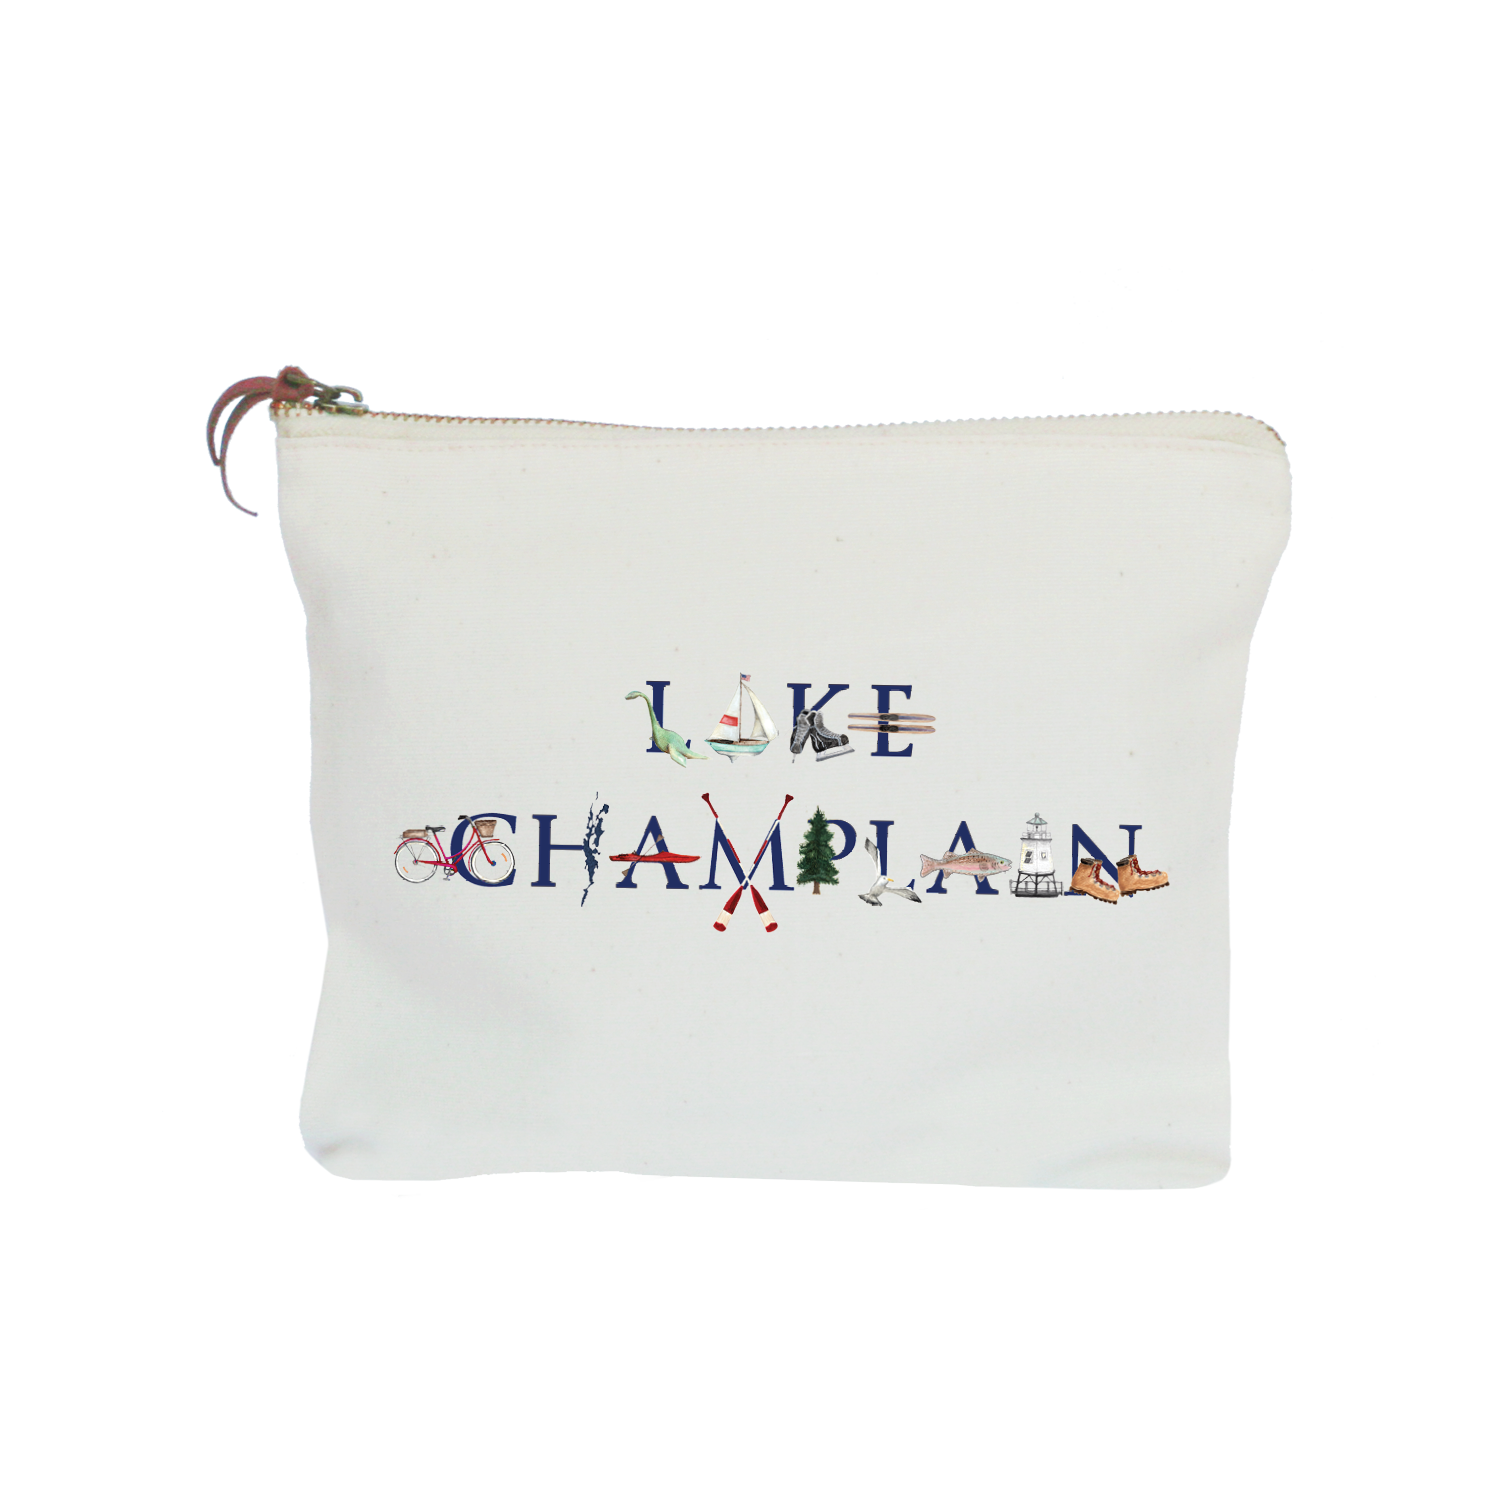 lake champlain zipper pouch